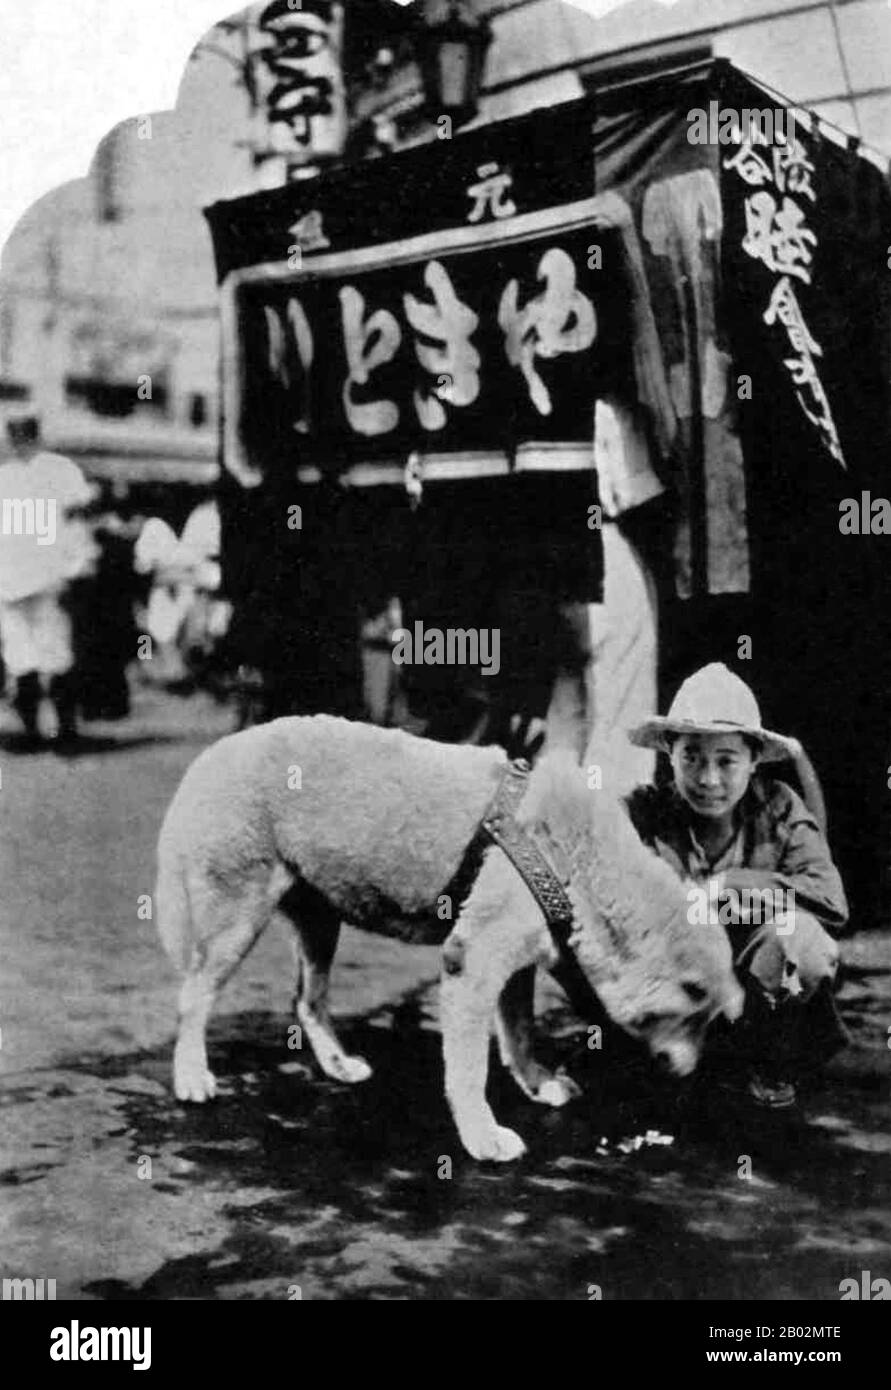 Hachikō (ハチ公, 10. November 1923 - 8. März 1935) war ein Akita-Hund, der auf einem Bauernhof in der Nähe der Stadt Ōdate, Präfektur Akita, geboren wurde und an den seine bemerkenswerte Treue zu seinem Besitzer erinnert, die viele Jahre nach dem Tod seines Besitzers andauerte. Im Jahr 1924 nahm Hidesaburō Ueno, Professor für Landwirtschaft an der Universität Tokio, als Haustier den goldbraunen Akita in Hachikō auf. Während seines Besitzers begrüßte ihn Hachikō am Ende eines jeden Tages auf der nahe gelegenen Station Shibuya. Das Paar setzte seinen Alltag bis Mai 1925 fort, als Professor Ueno nicht mehr zurückkam. Der Professor hatte gelitten Stockfoto